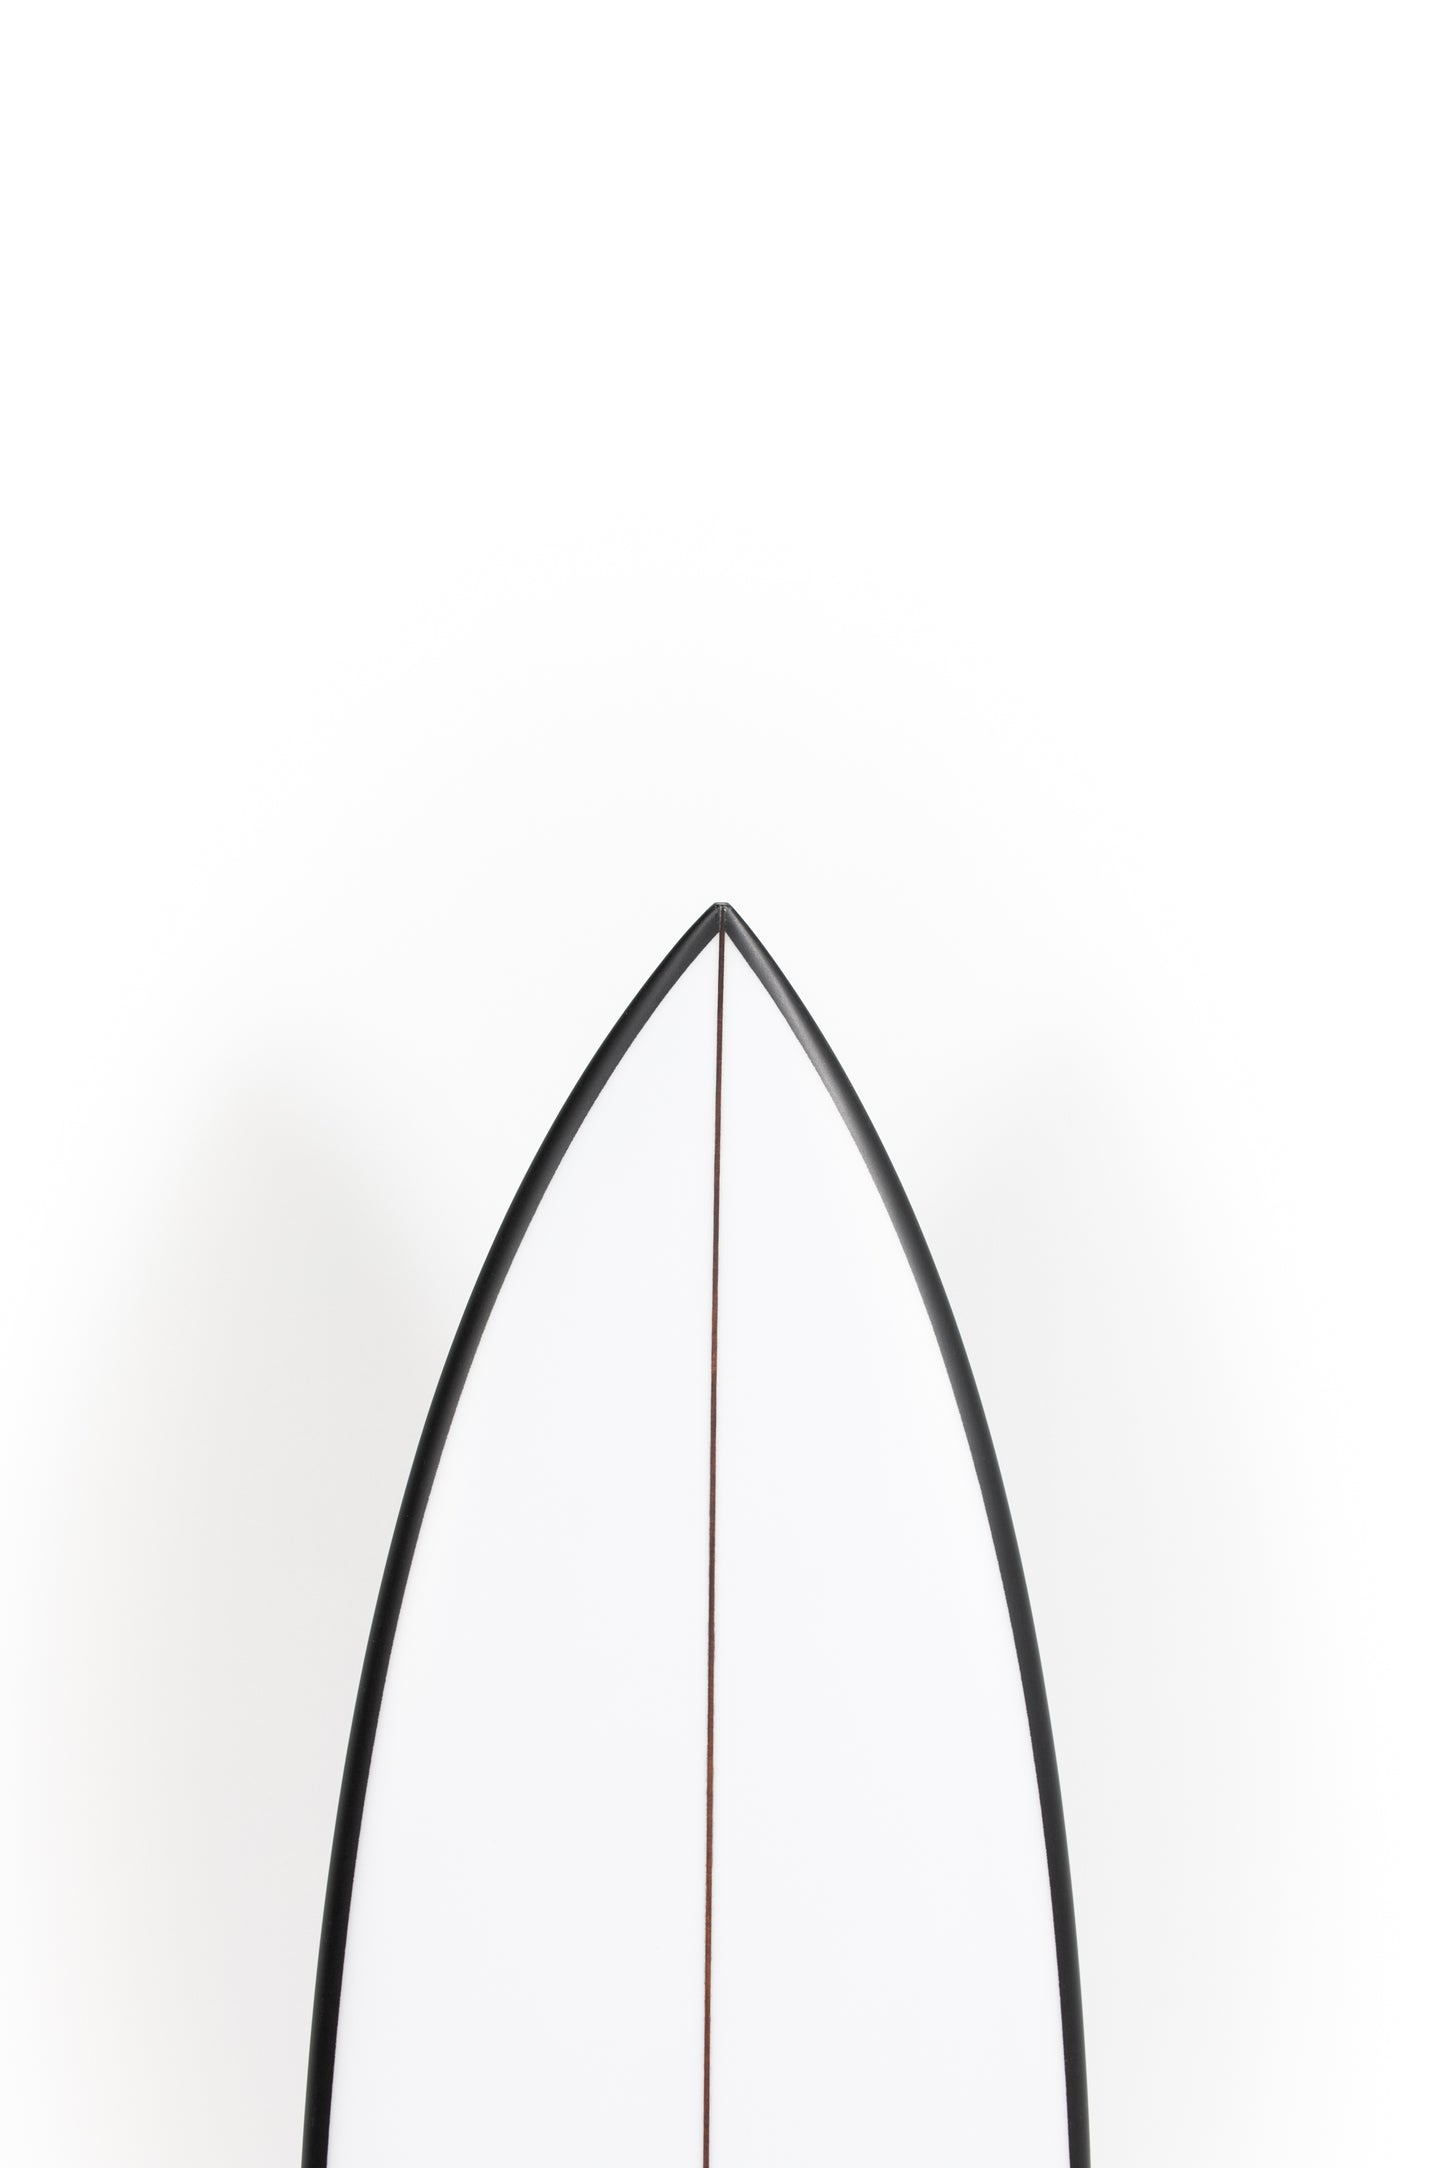 
                  
                    Pukas Surf Shop - Christenson Surfboards - OP1 - 5'7" x 19 1/4 x 2 7/16 x 27,95L - CX05029
                  
                